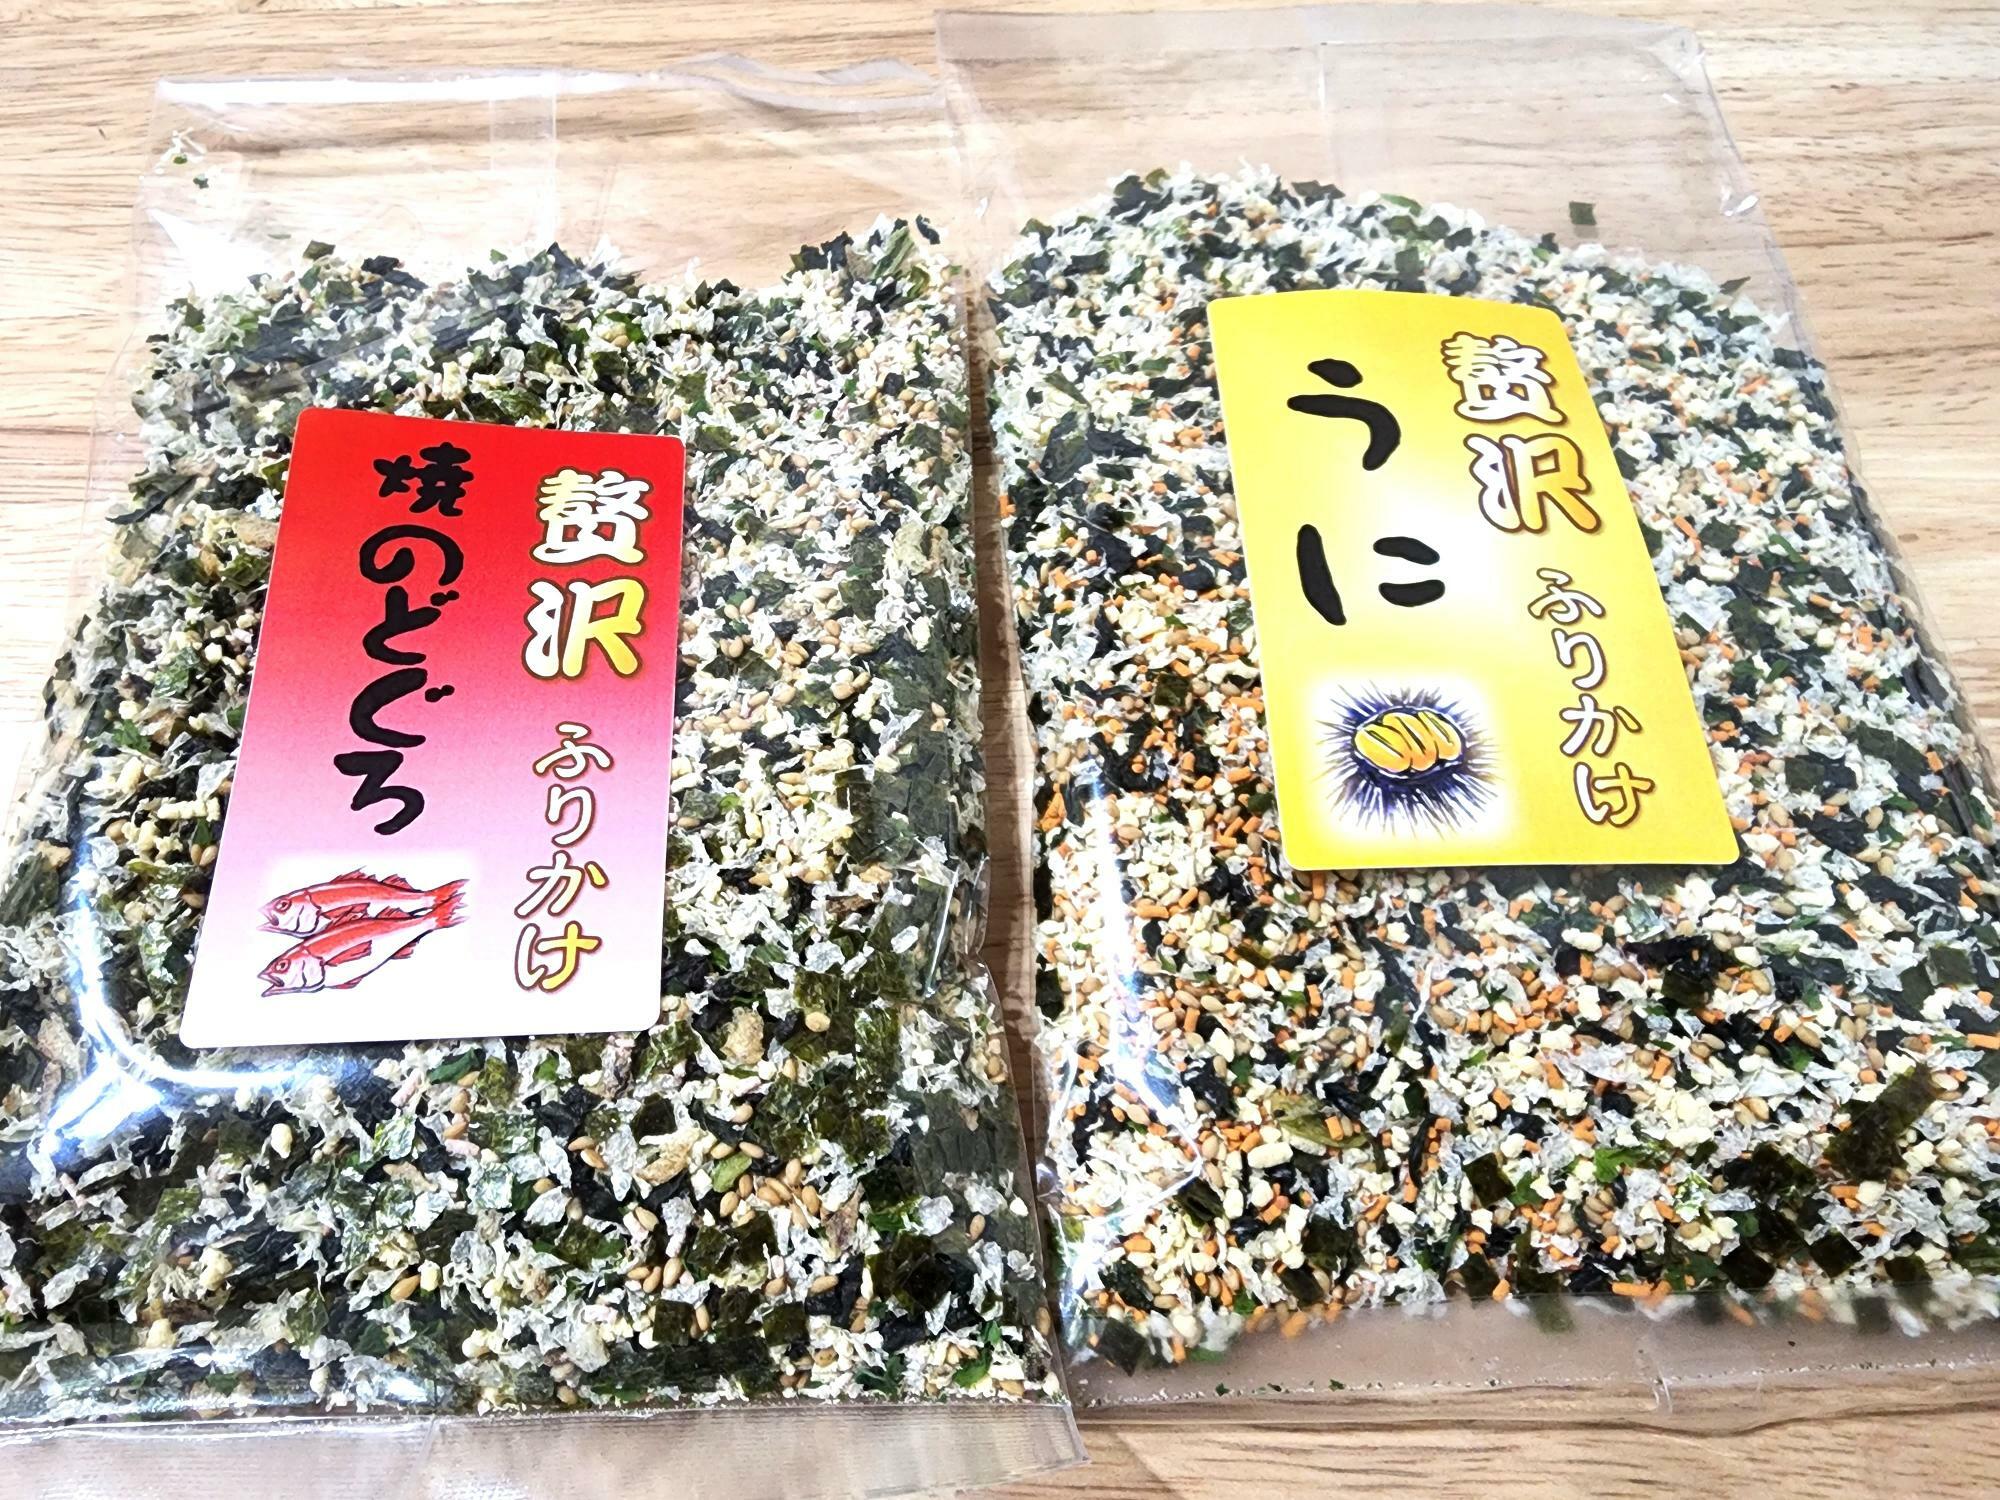 日本の味めぐり「北海道・長万部 ホットペッパー」で購入したふりかけ。